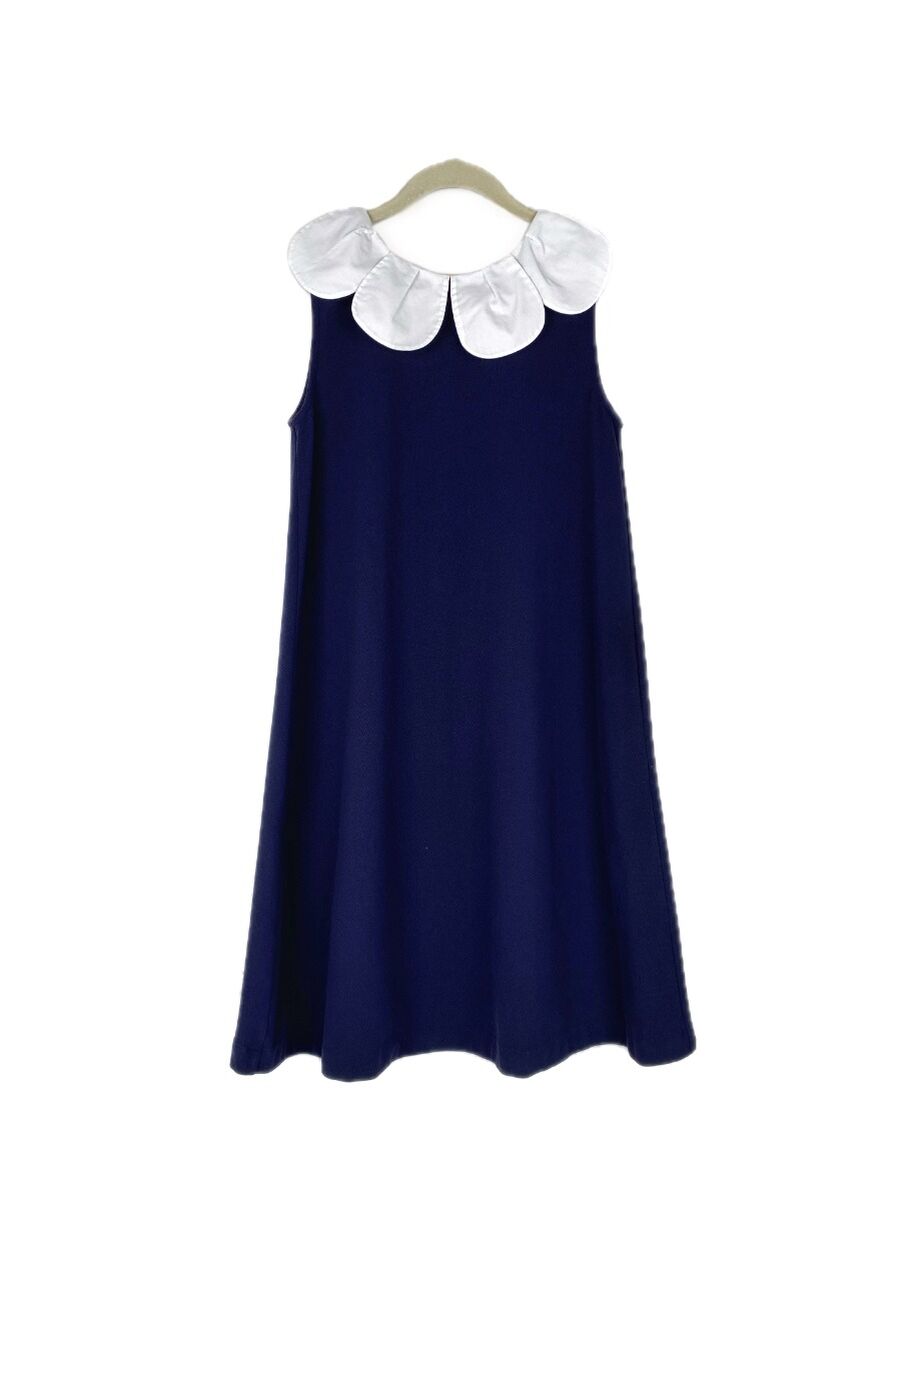 image 1 Детское платье темно-синего цвета с белым воротником